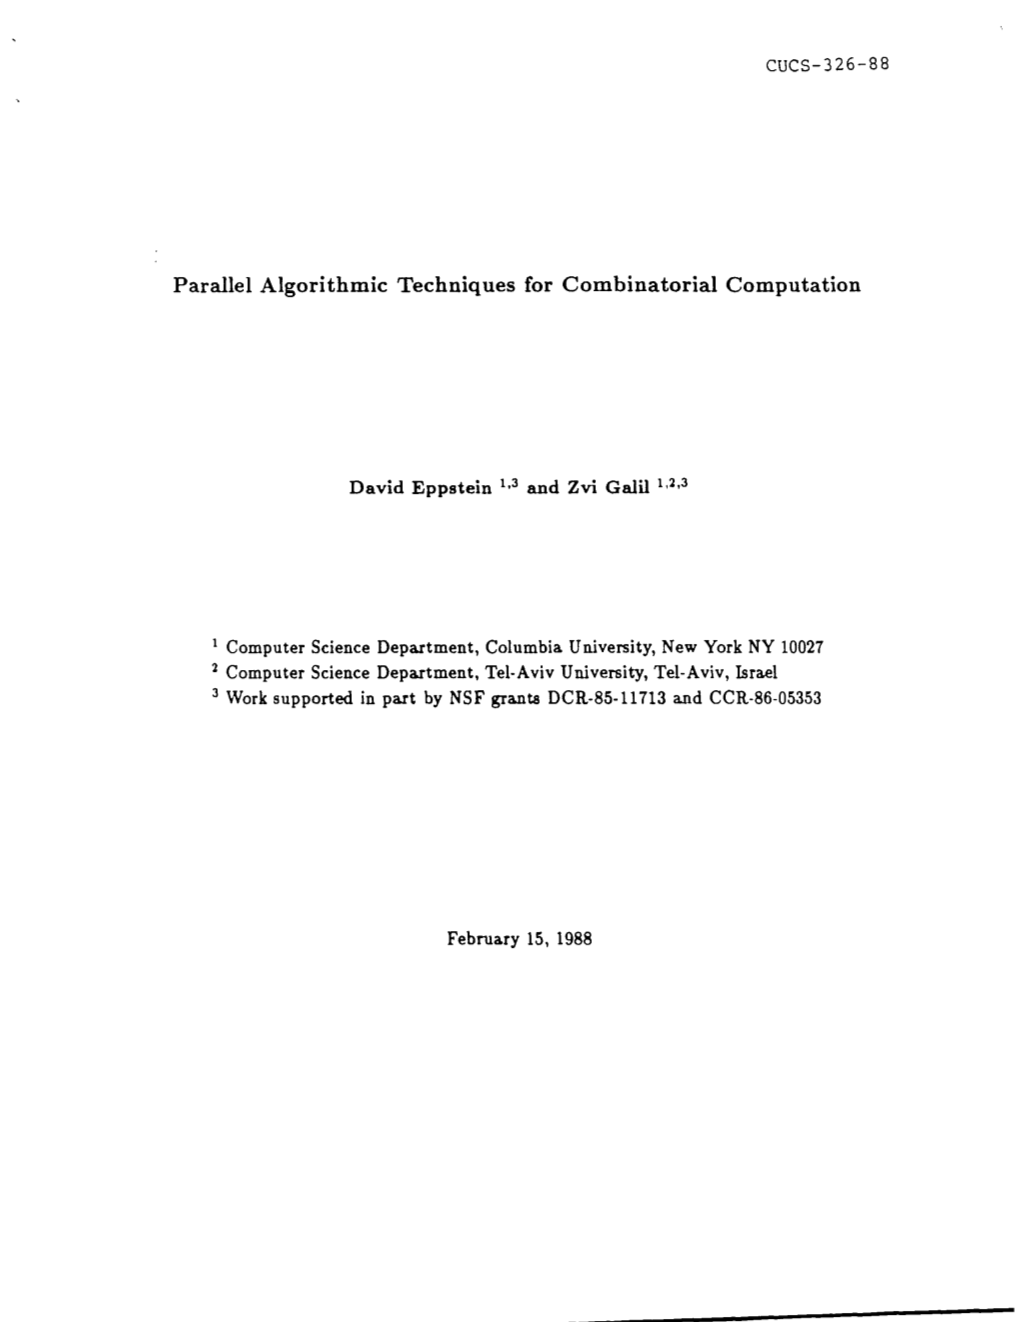 Parallel Algorithmic Techniques for Combinatorial Computation